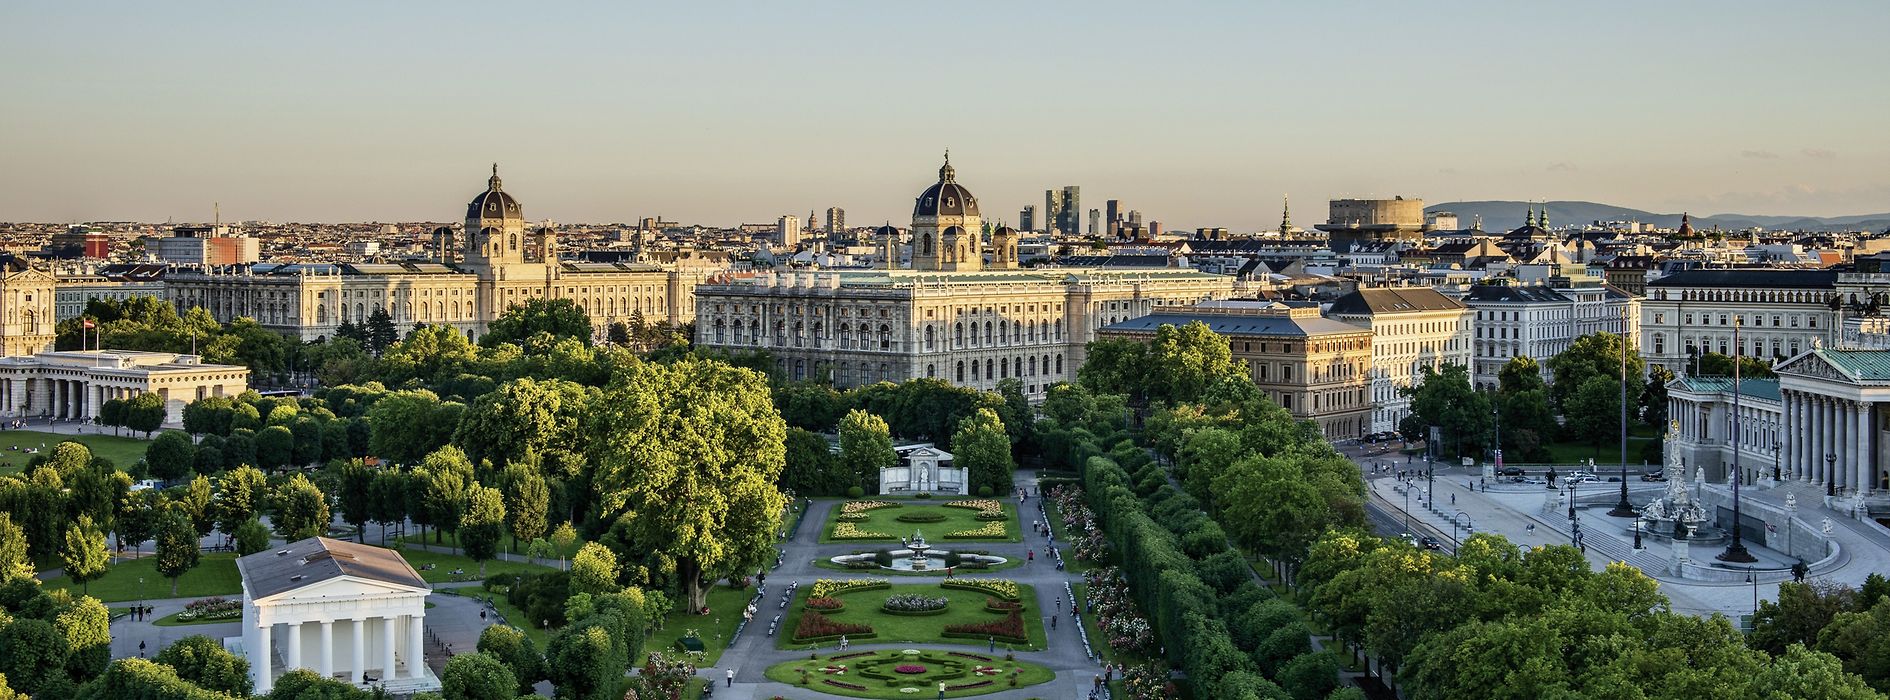 View of Volksgarten, museums und parliament